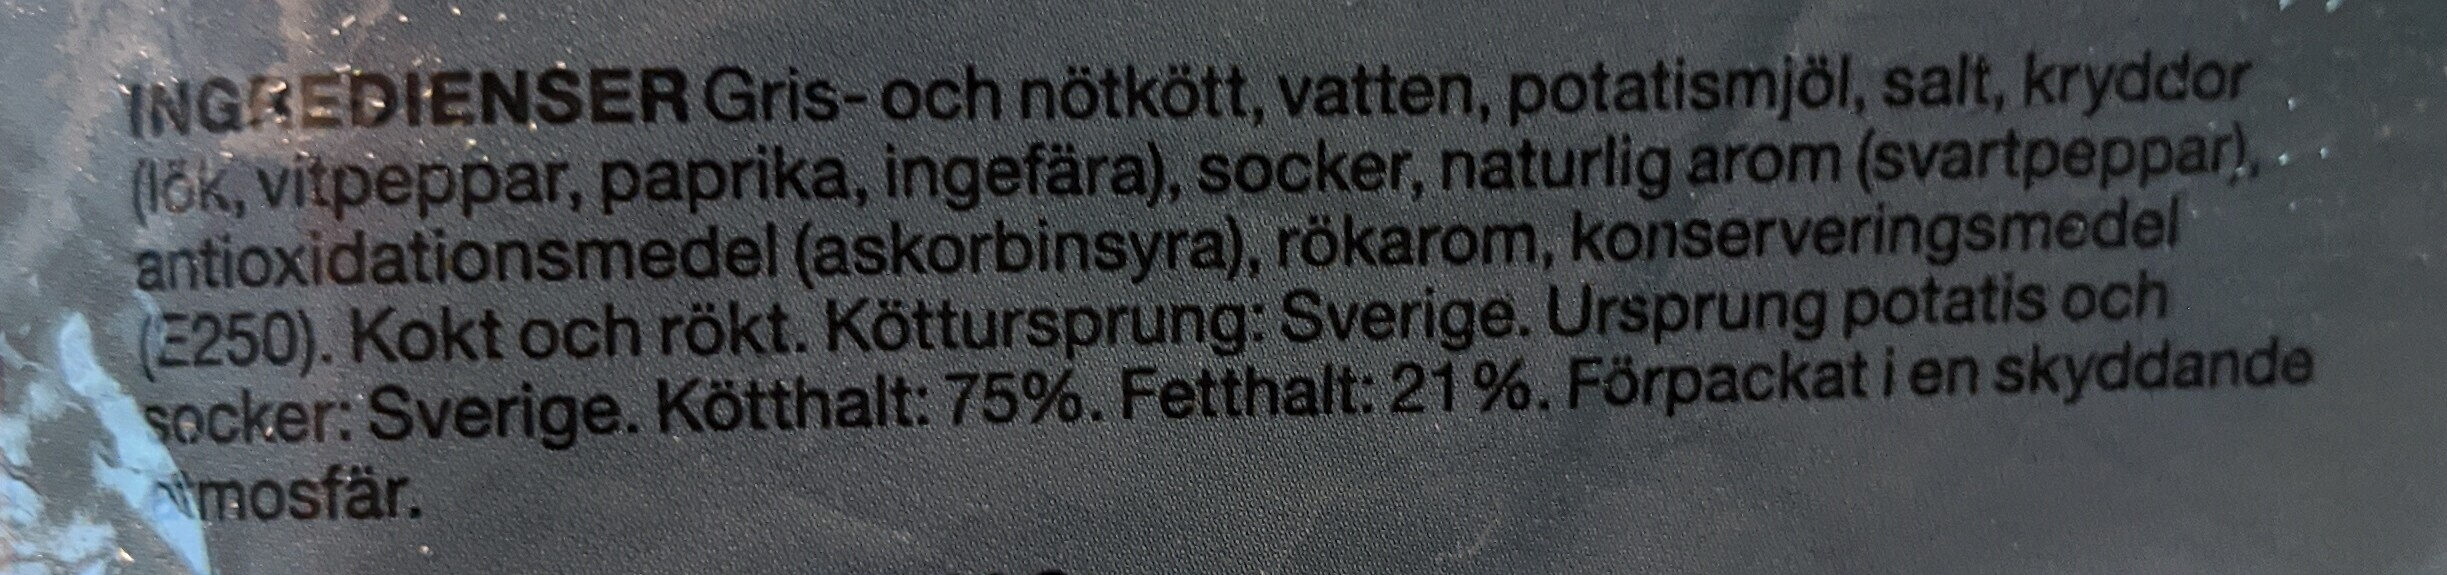 Falukorv Extra Rökt - Ingredients - sv